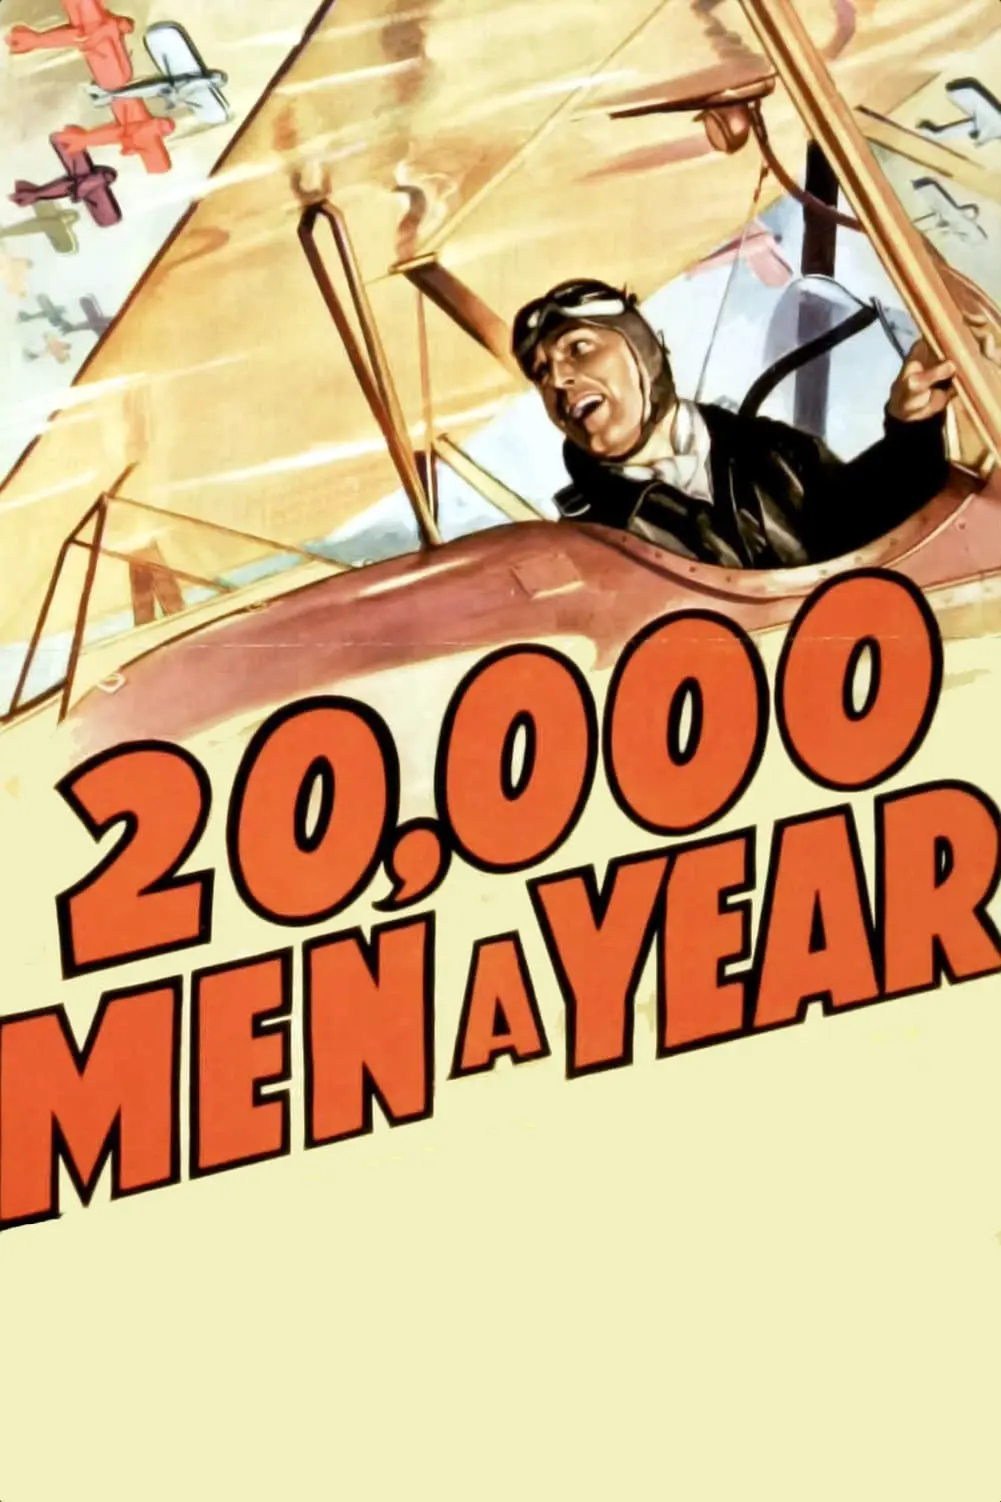 20,000 hombres al año_peliplat